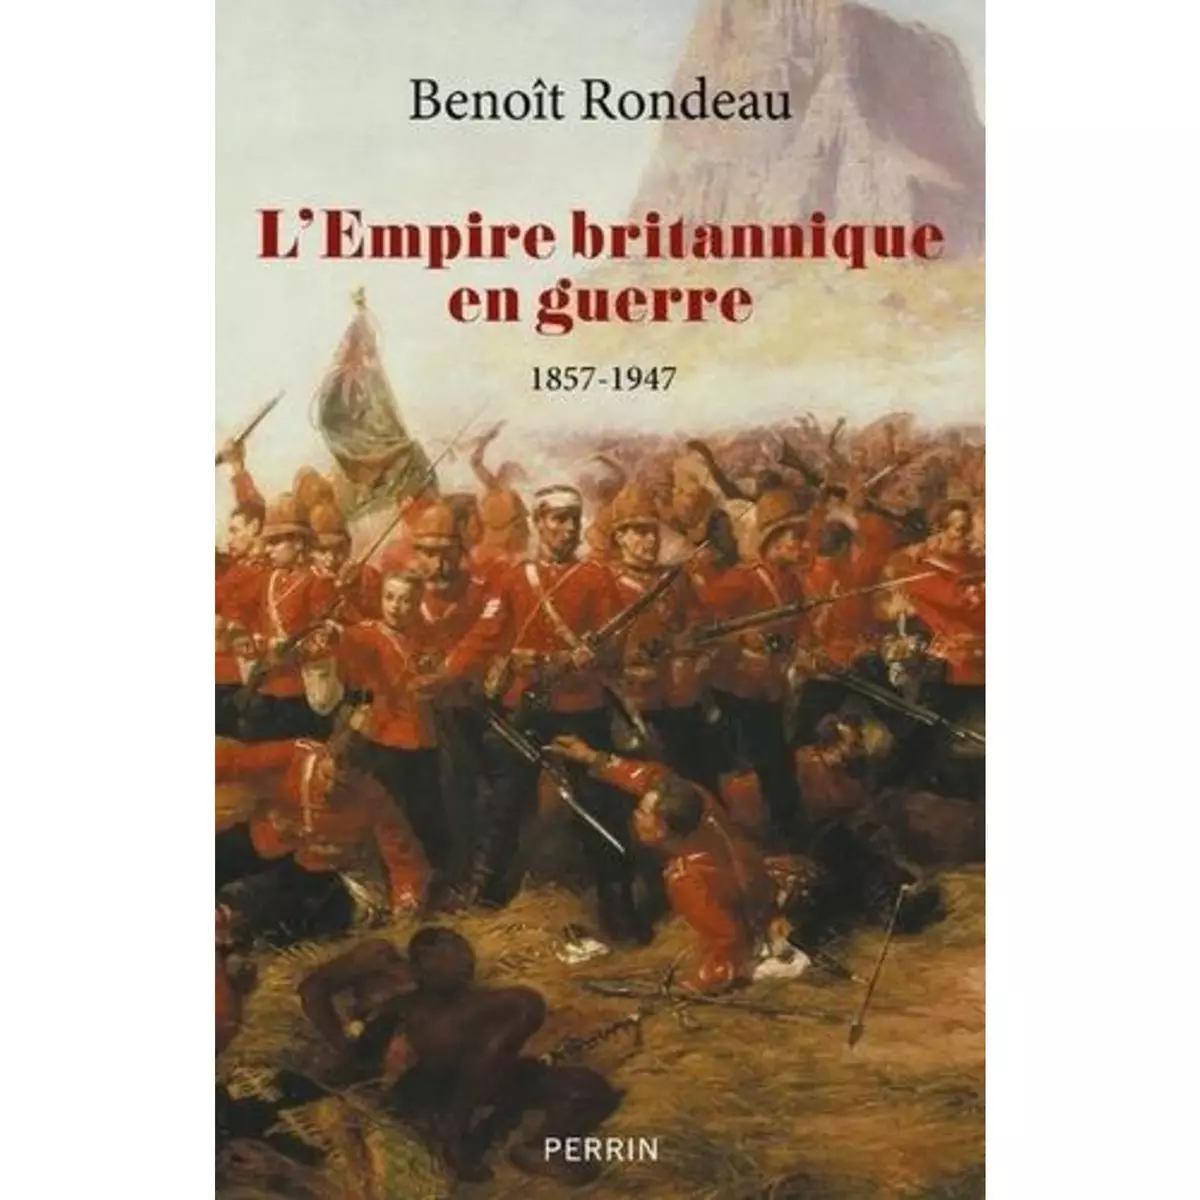  L'EMPIRE BRITANNIQUE EN GUERRE. 1857-1947, Rondeau Benoît